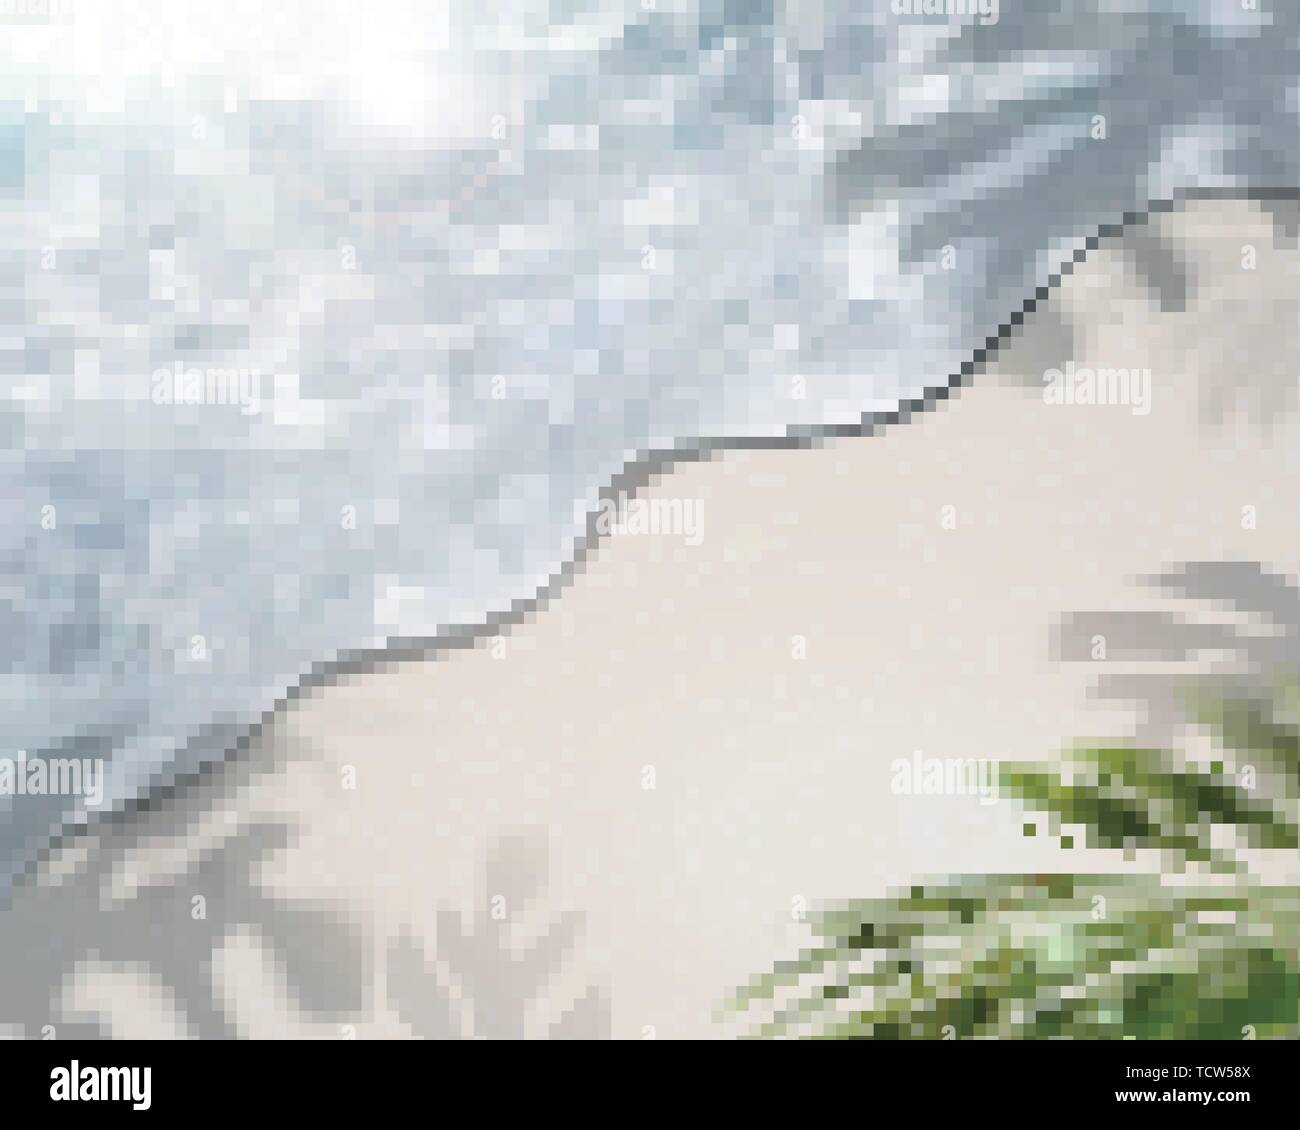 Sommer Strand klares Wasser Hintergrund im 3D-Bild Stock Vektor